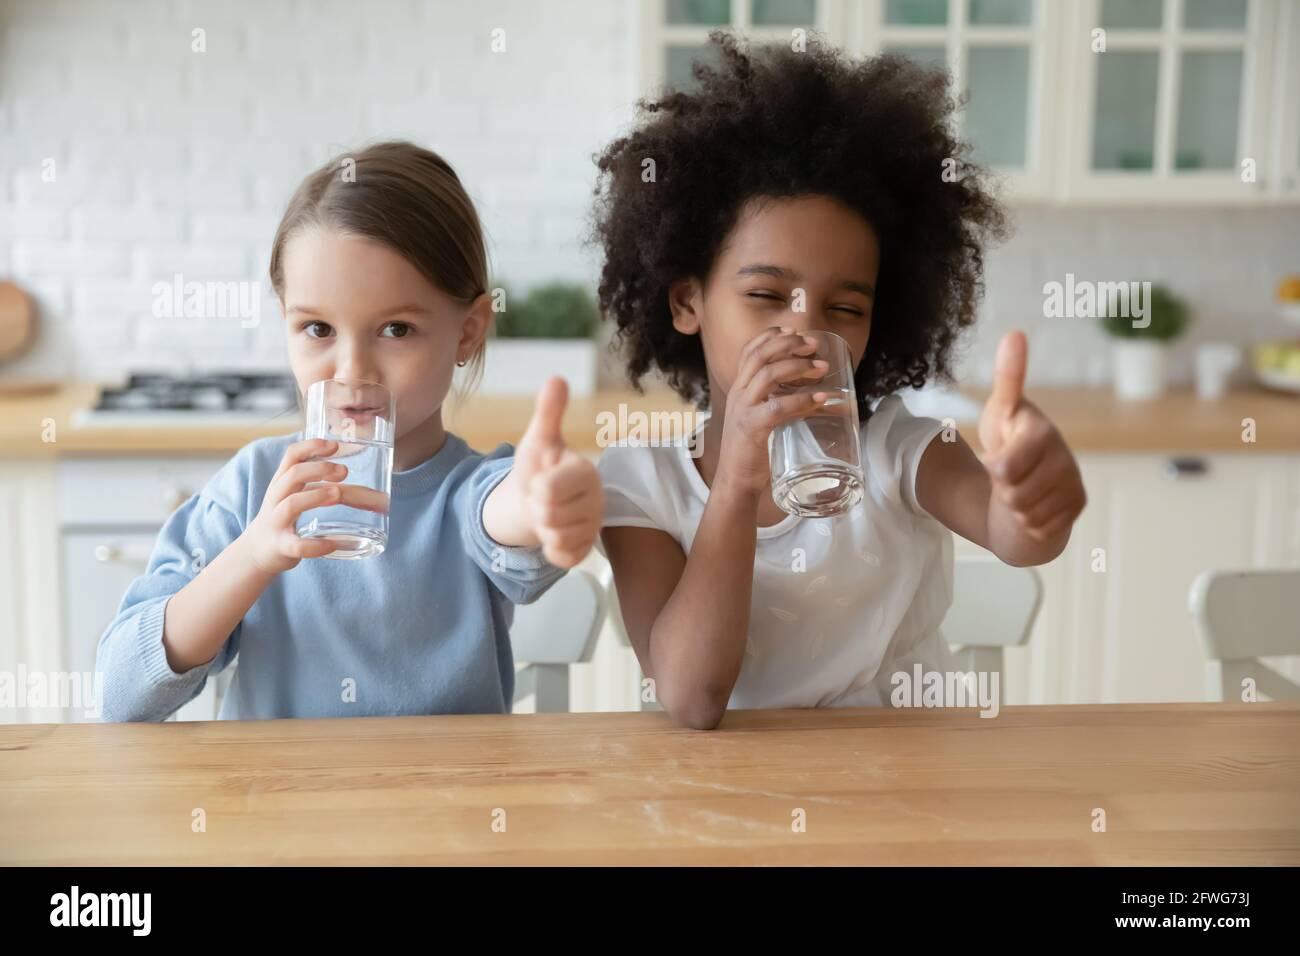 Ritratto di sorridenti ragazze multietniche bere acqua Foto Stock